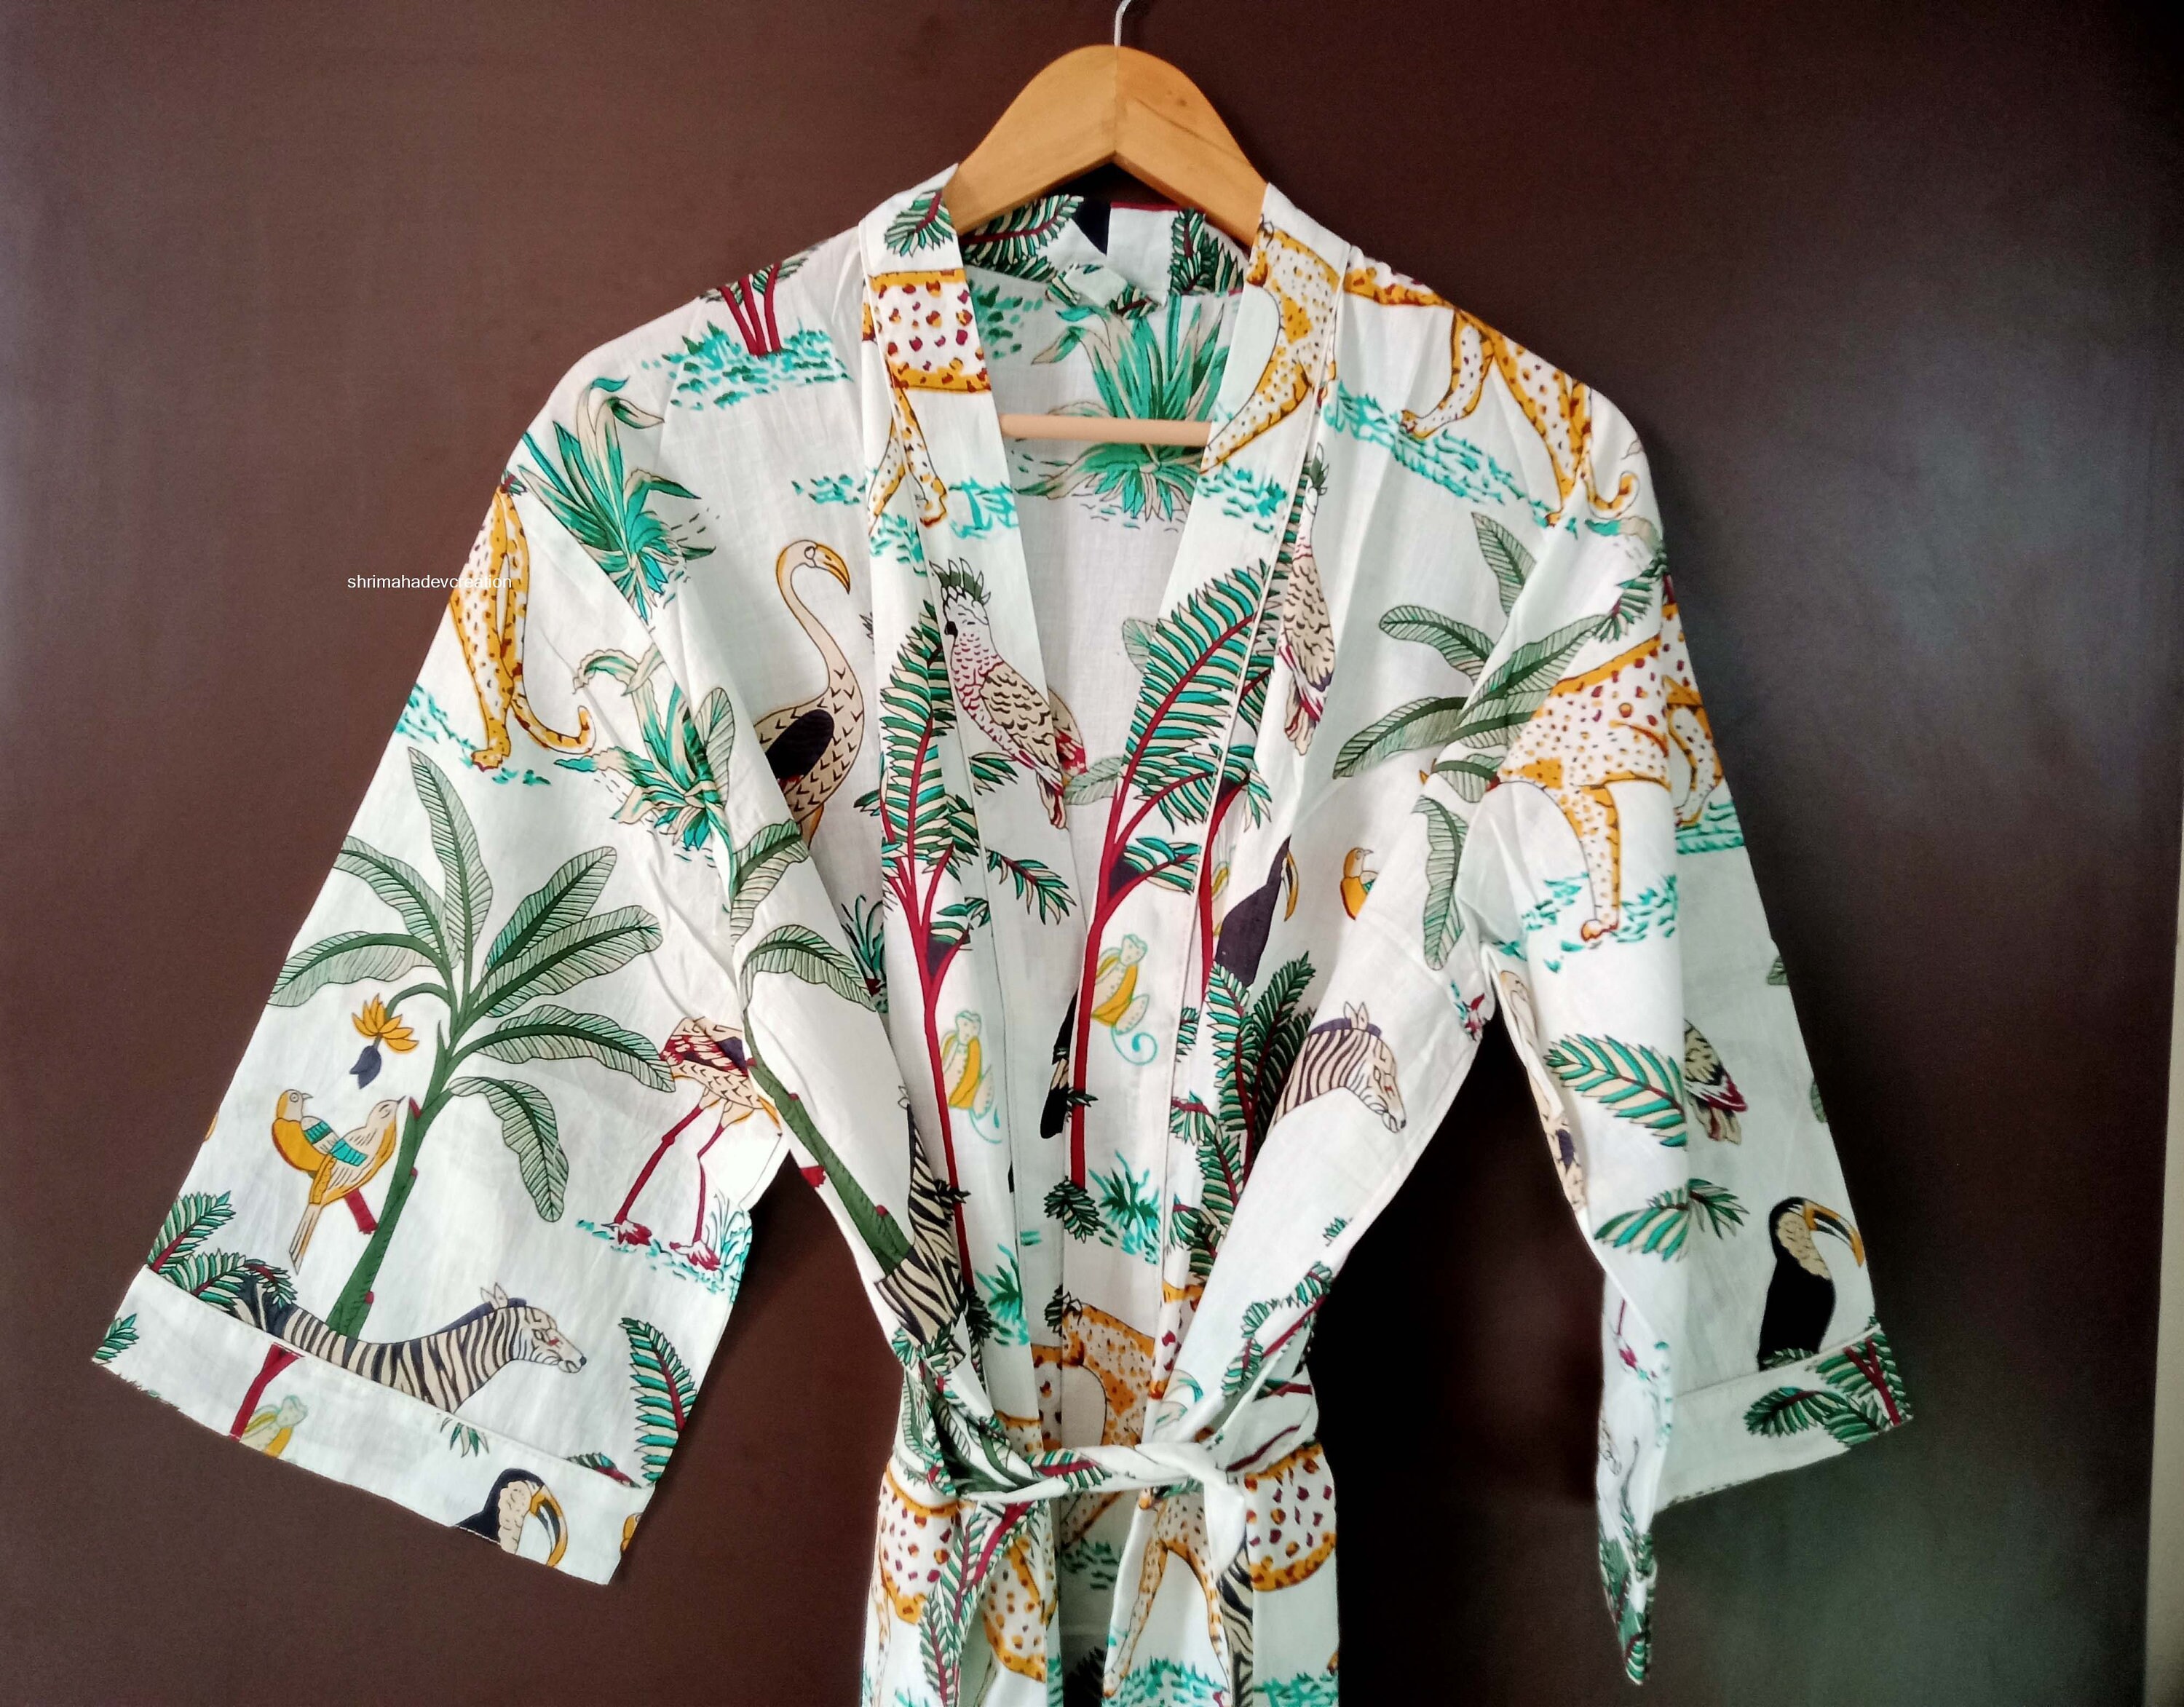 EXPRESS DELIVERY Cotton kimono Robes Wild Life Animal print | Etsy